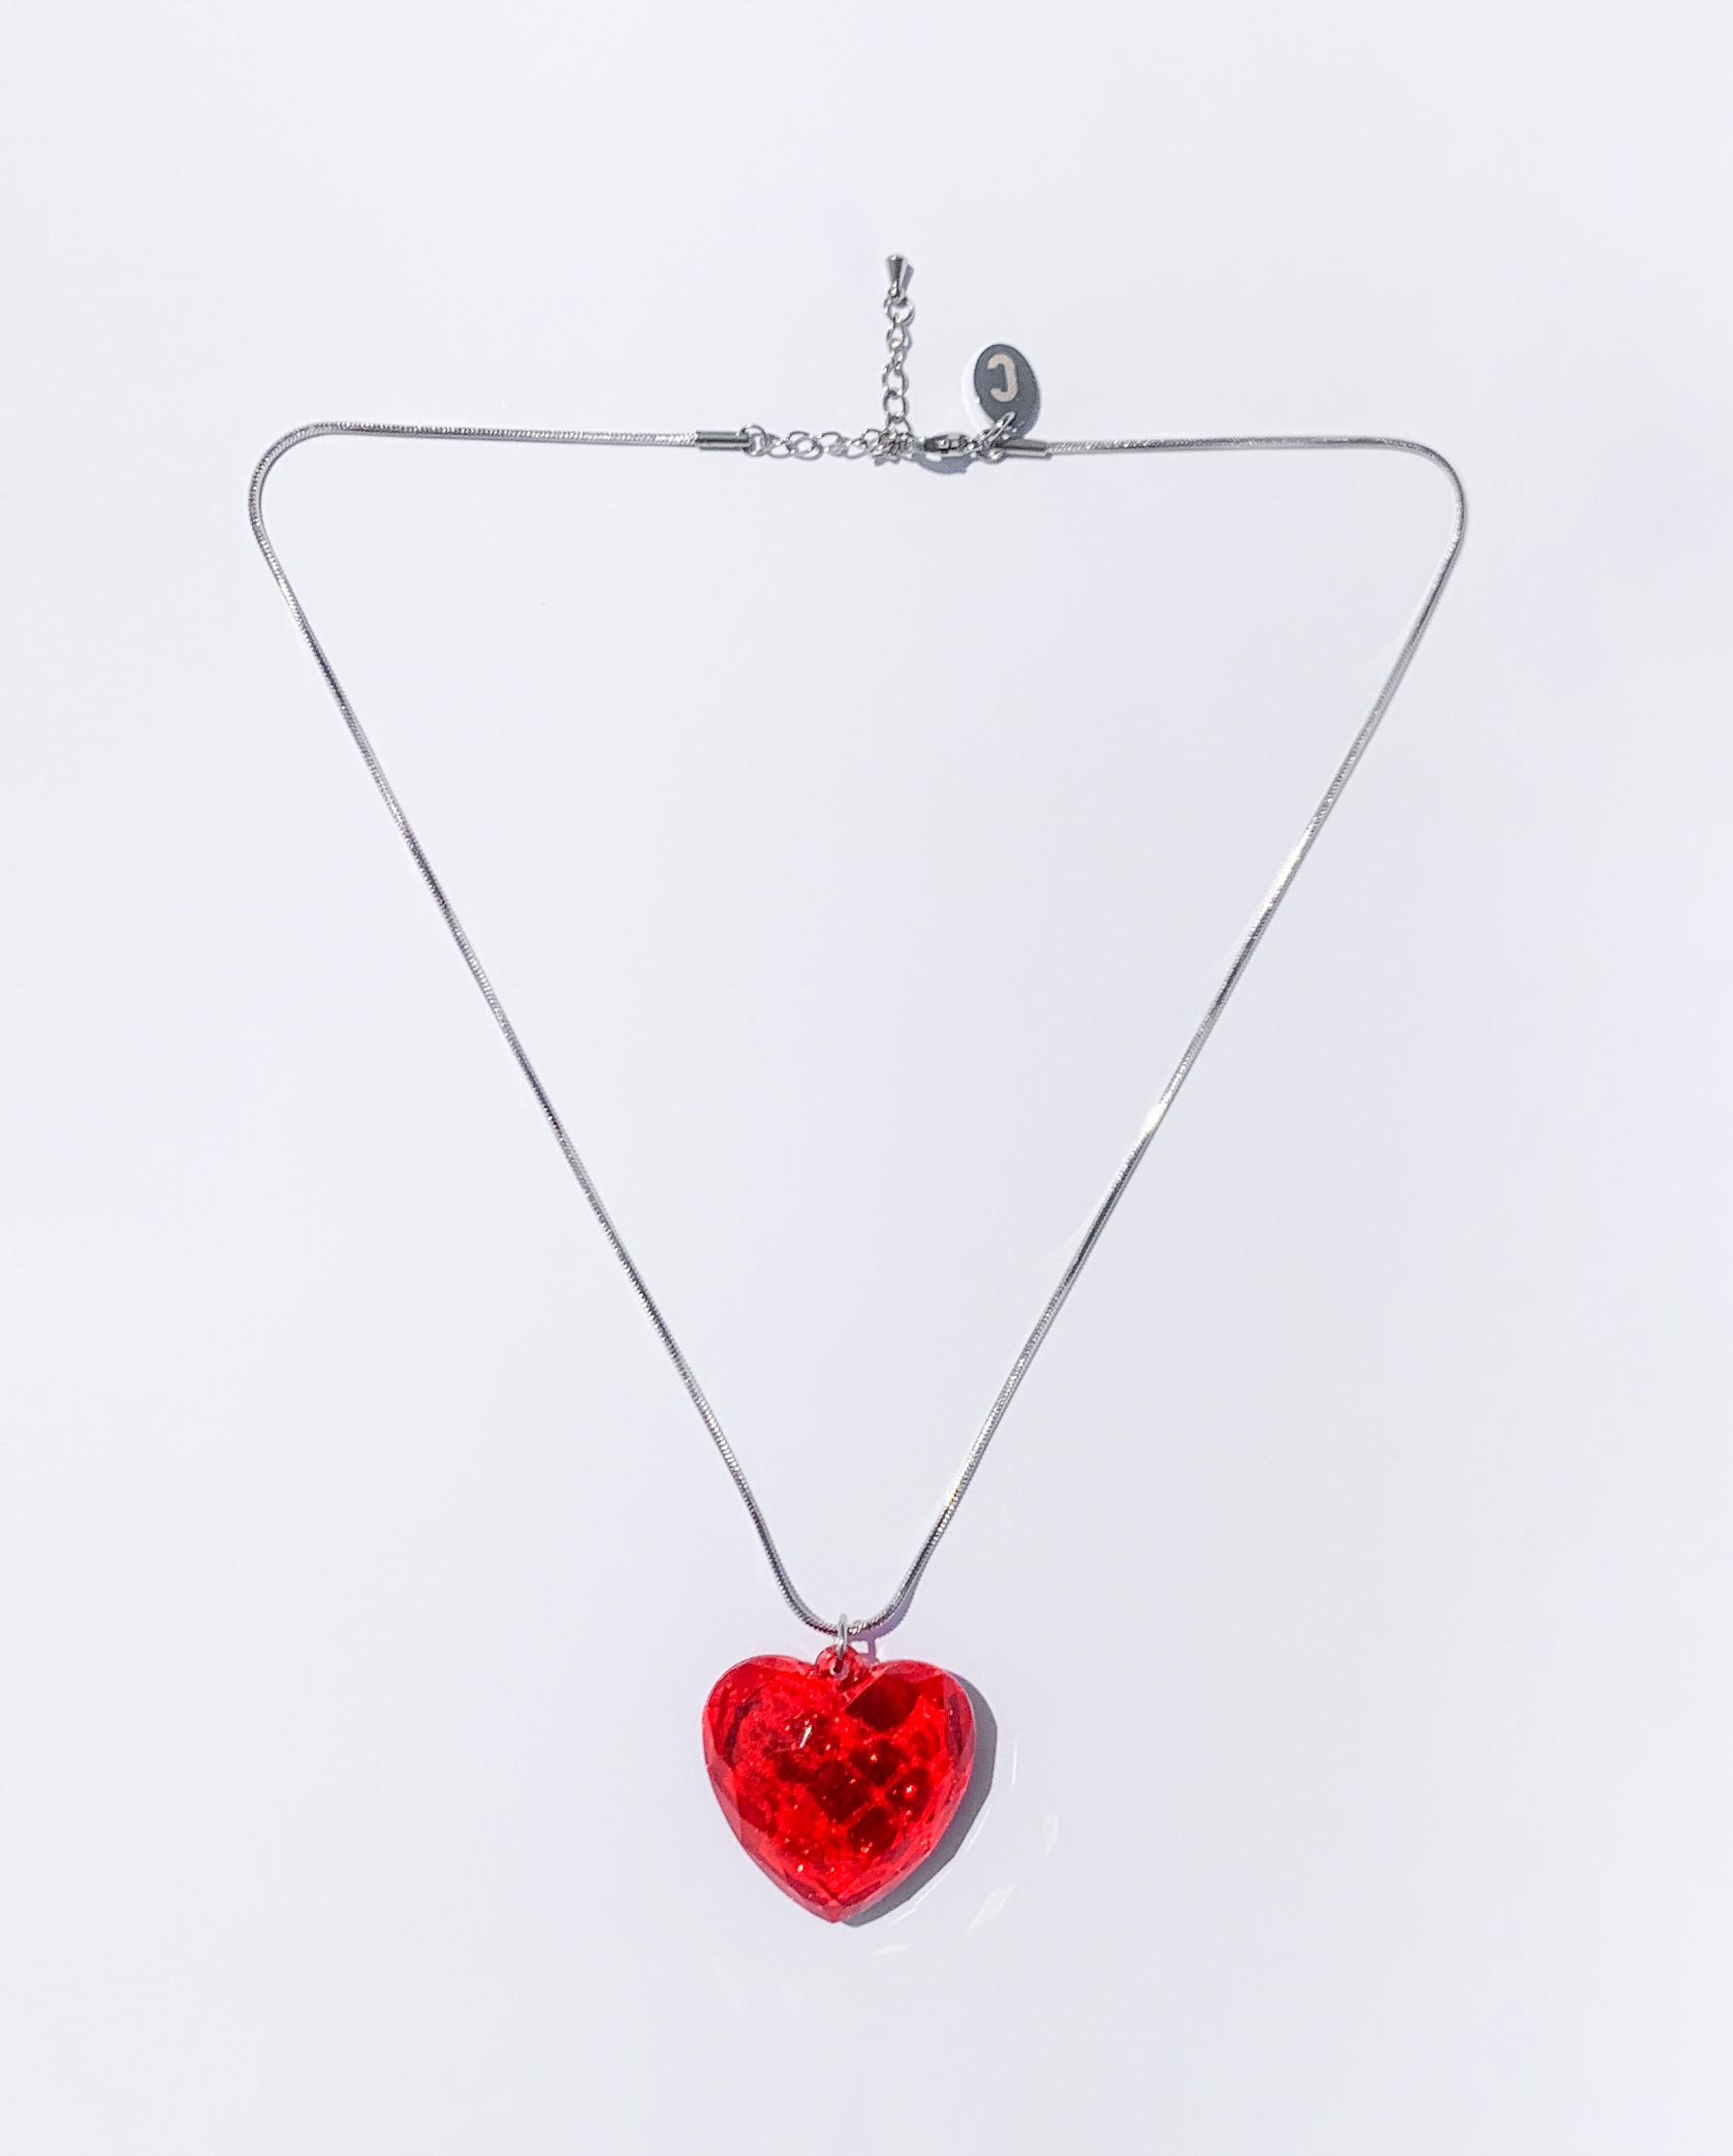 여성 주얼리, 하트 펜던트, 투명 플라스틱 하트, 뱀줄 목걸이, 스네이크체인 목걸이, 써클 목걸이, 하트 펜던트, 하트 목걸이, circle necklace, transparent heart necklace